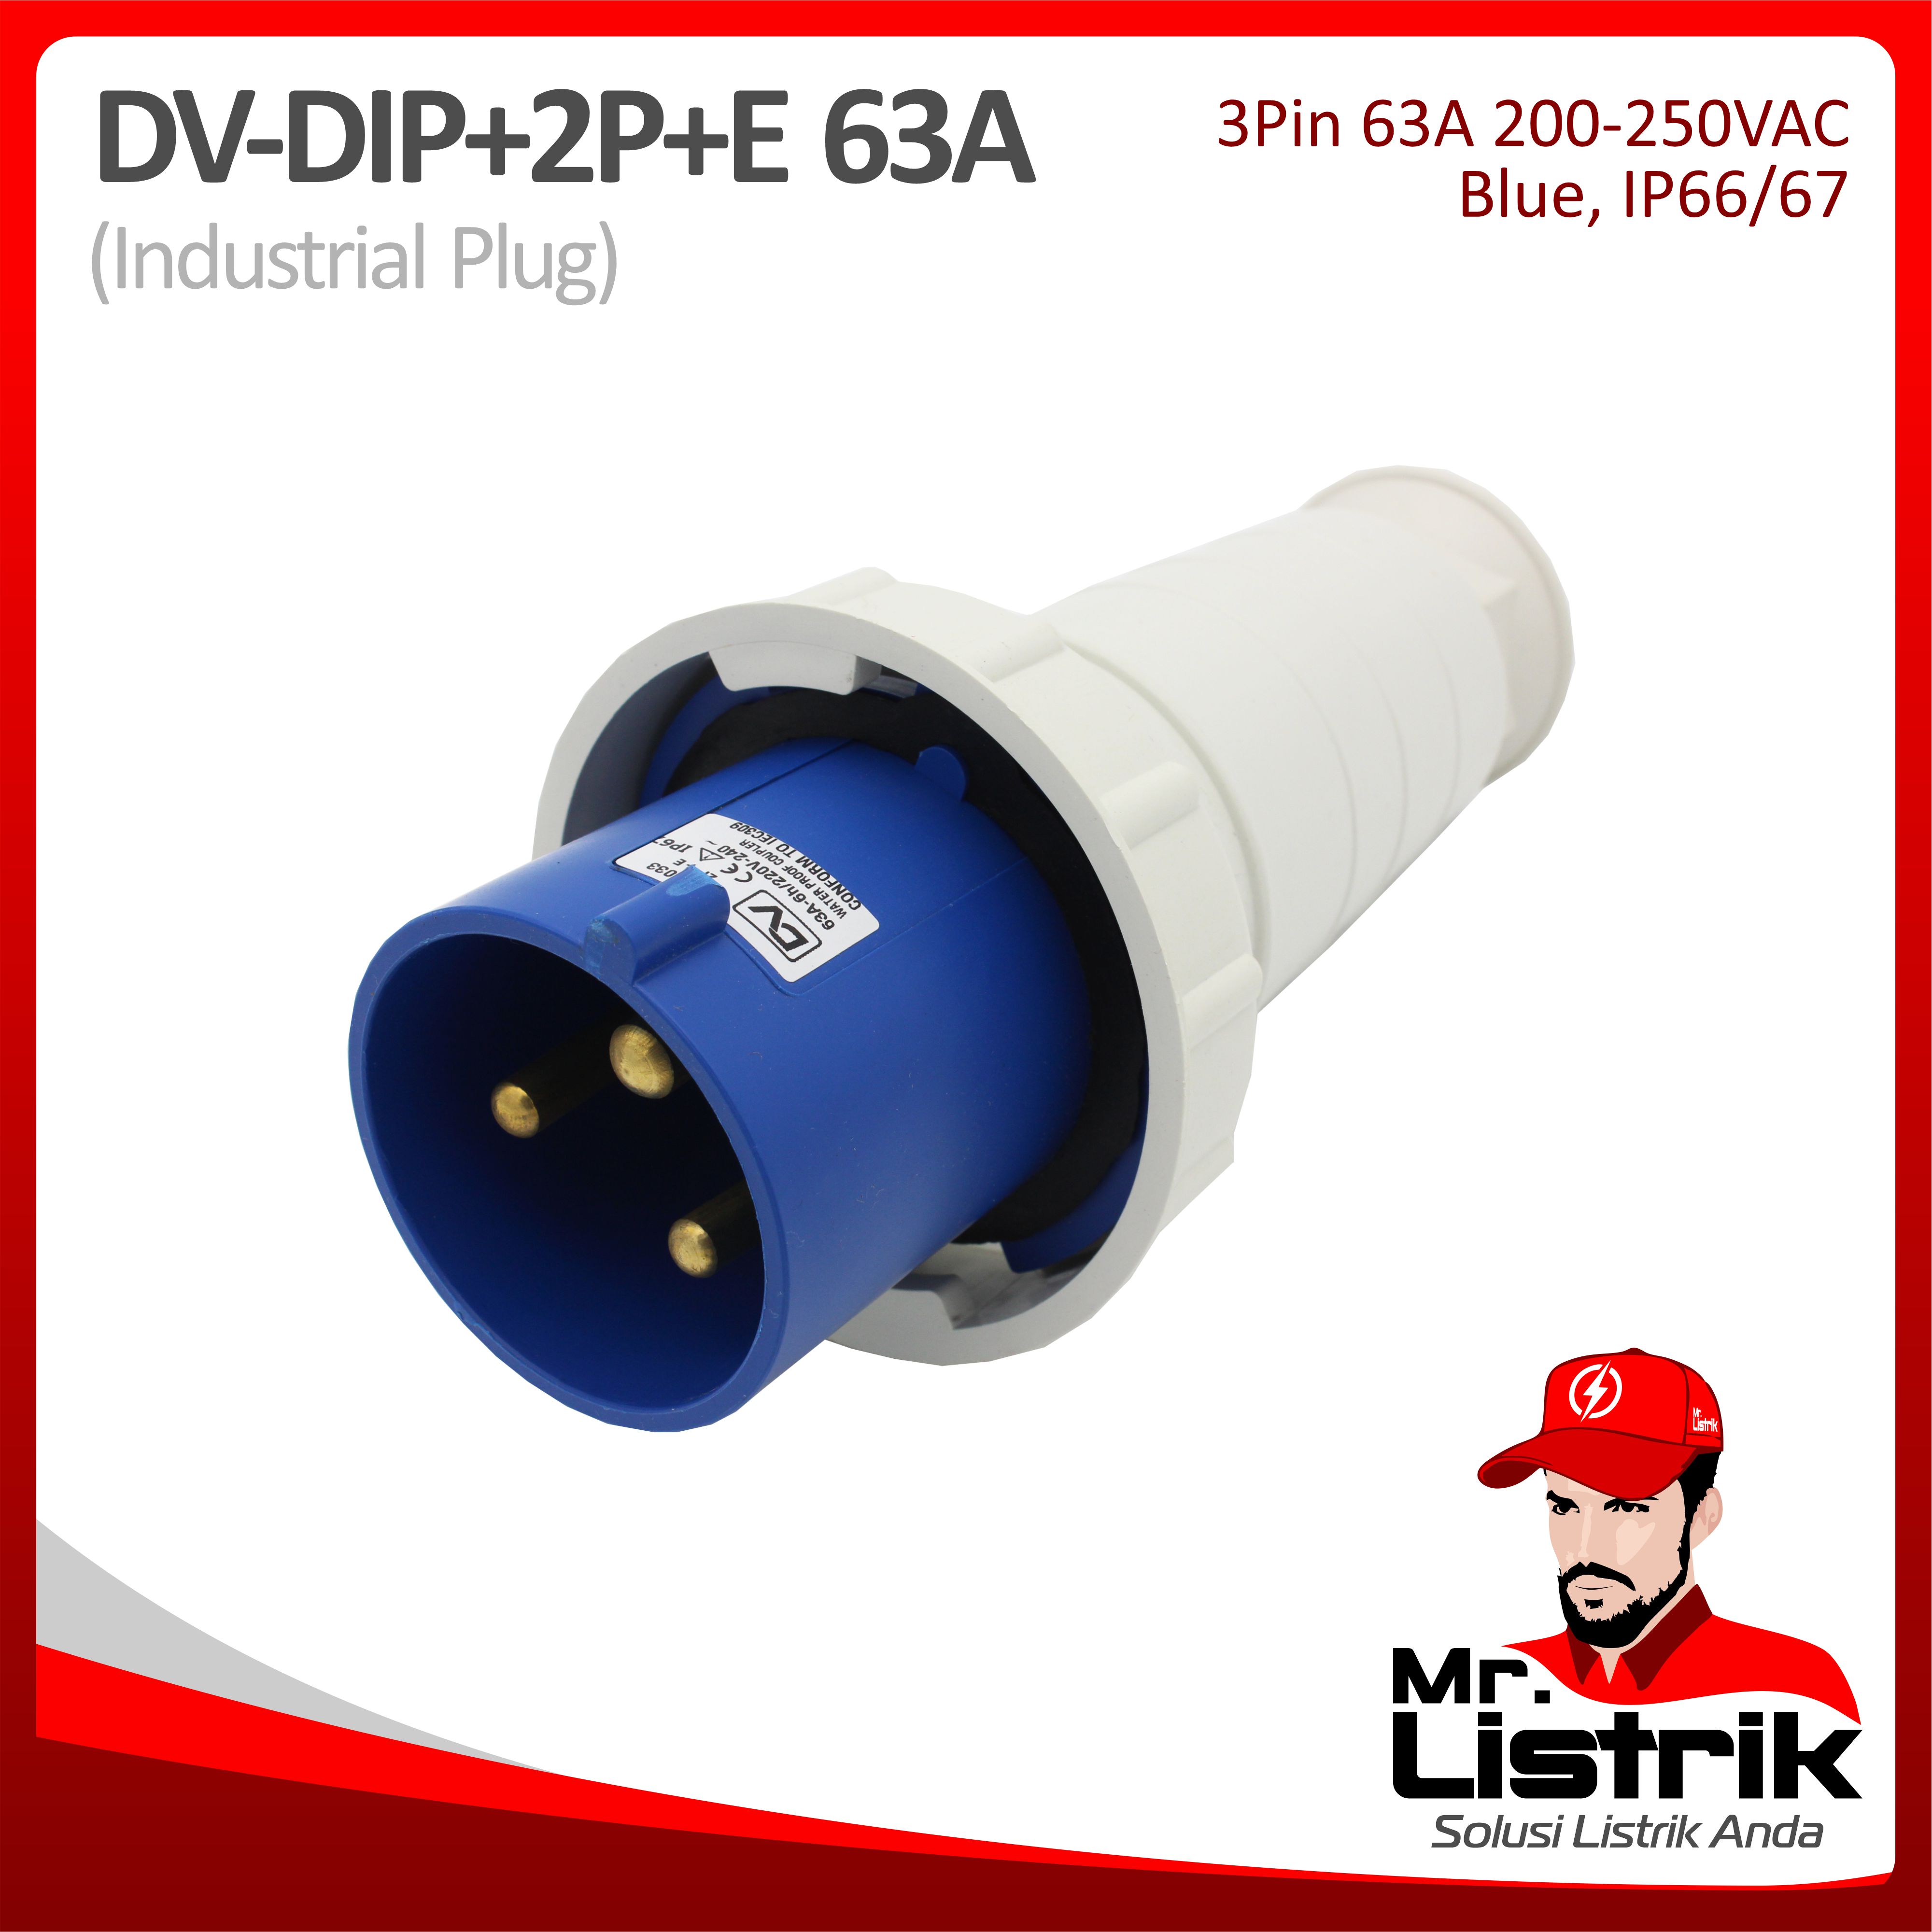 Industrial Plug 3 Pin 63A DV DIP-2P+E-63A